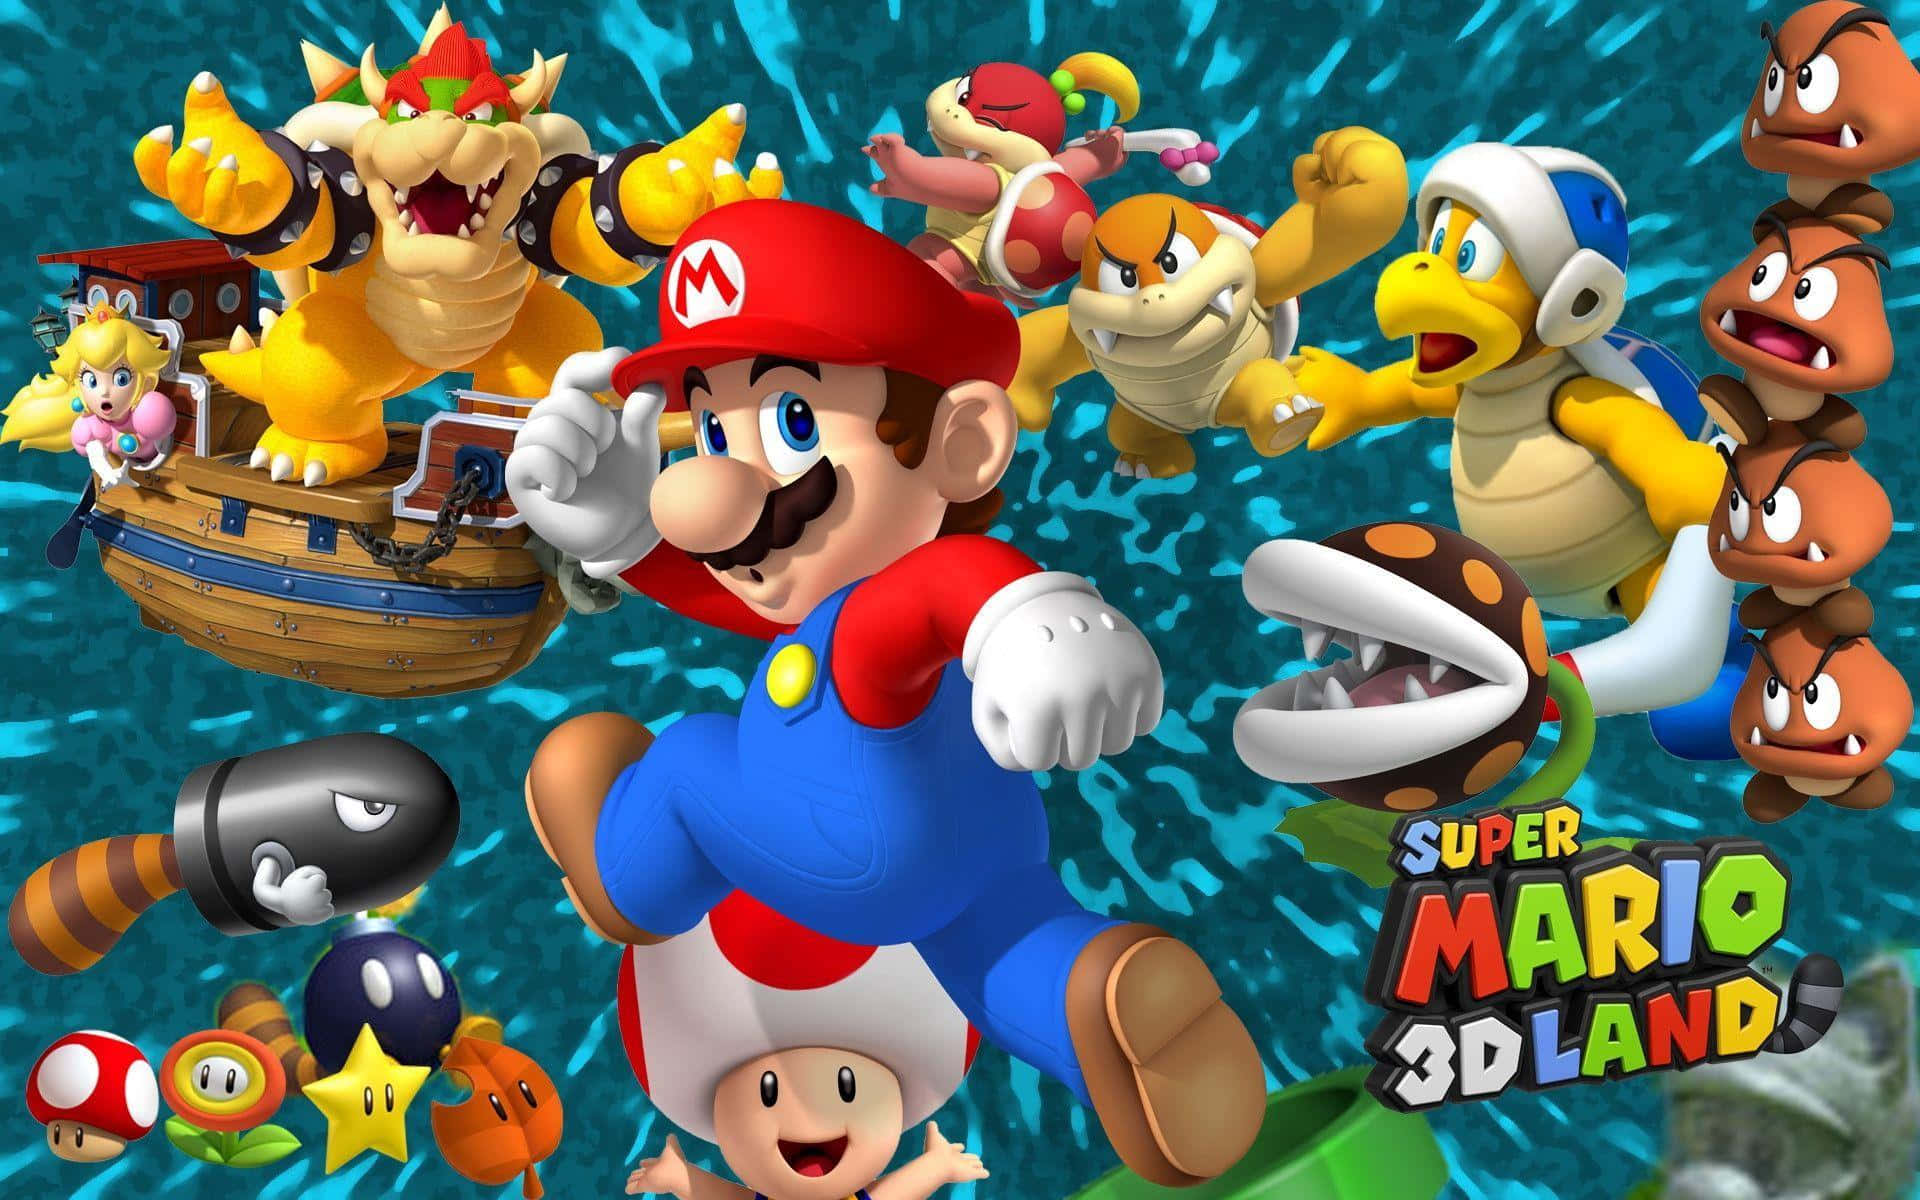 Celebrate the magic of Super Mario!